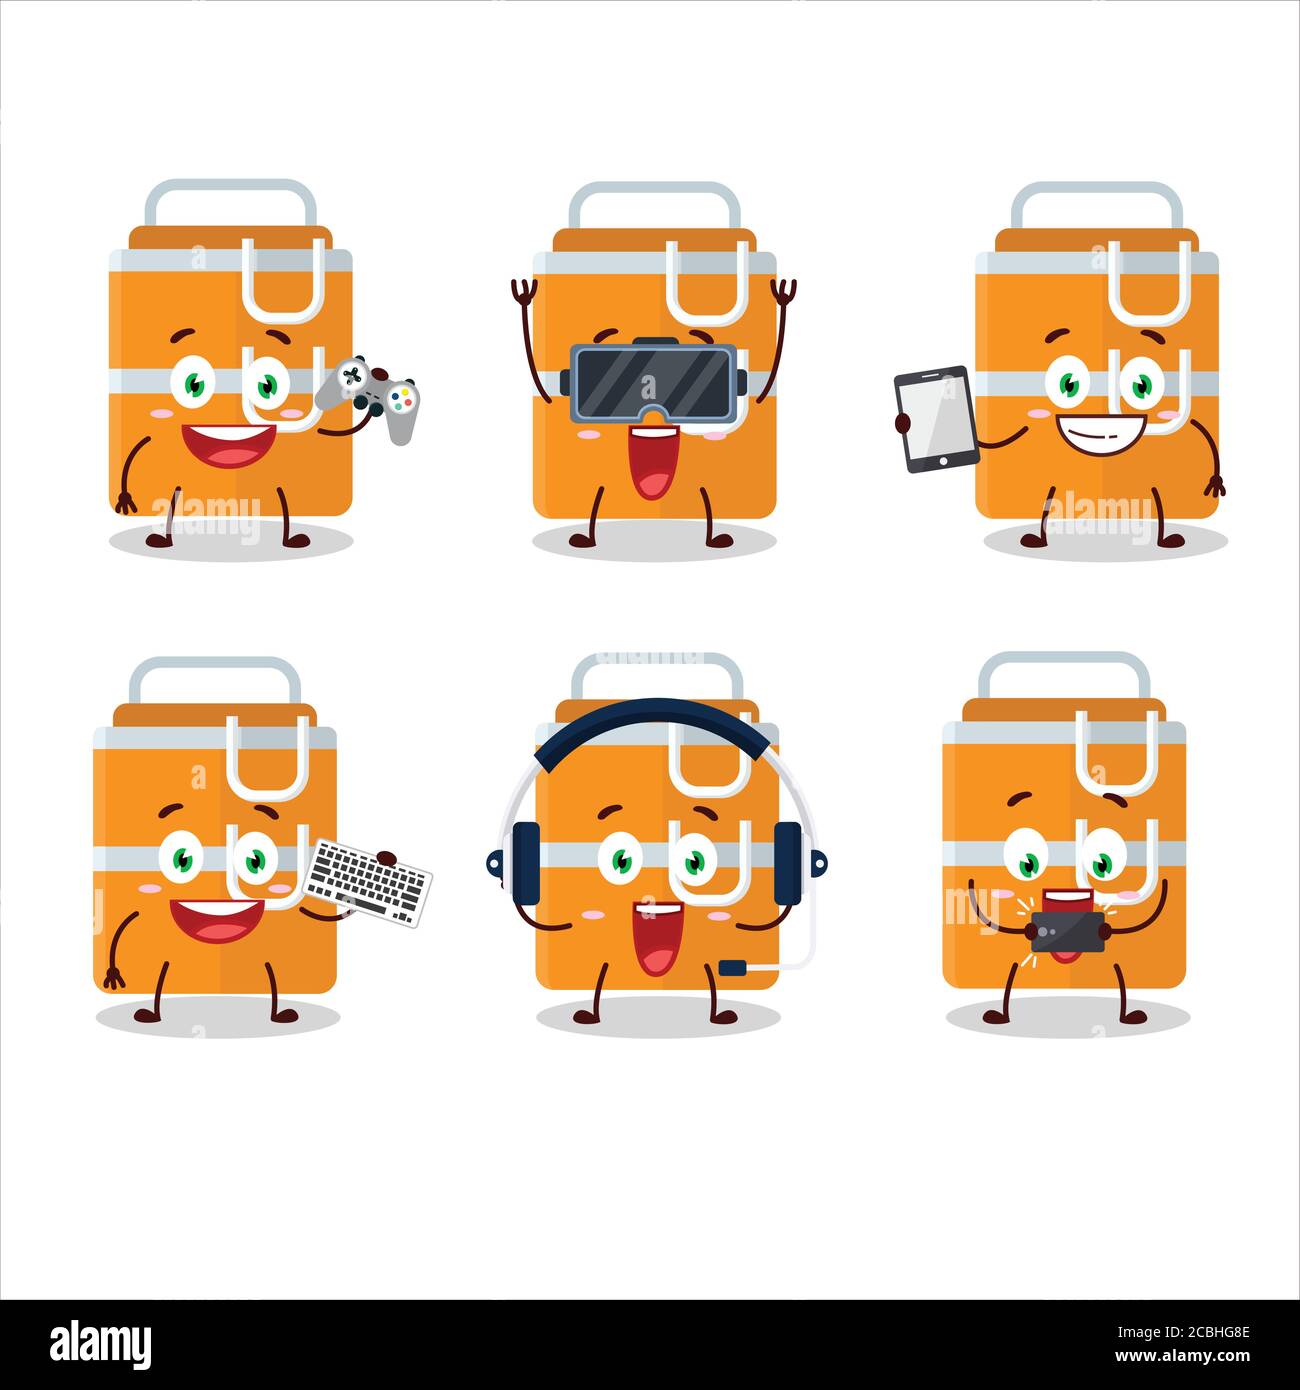 Orange Lunch Box personnage de dessin animé jouent à des jeux avec divers émoticônes mignons Illustration de Vecteur